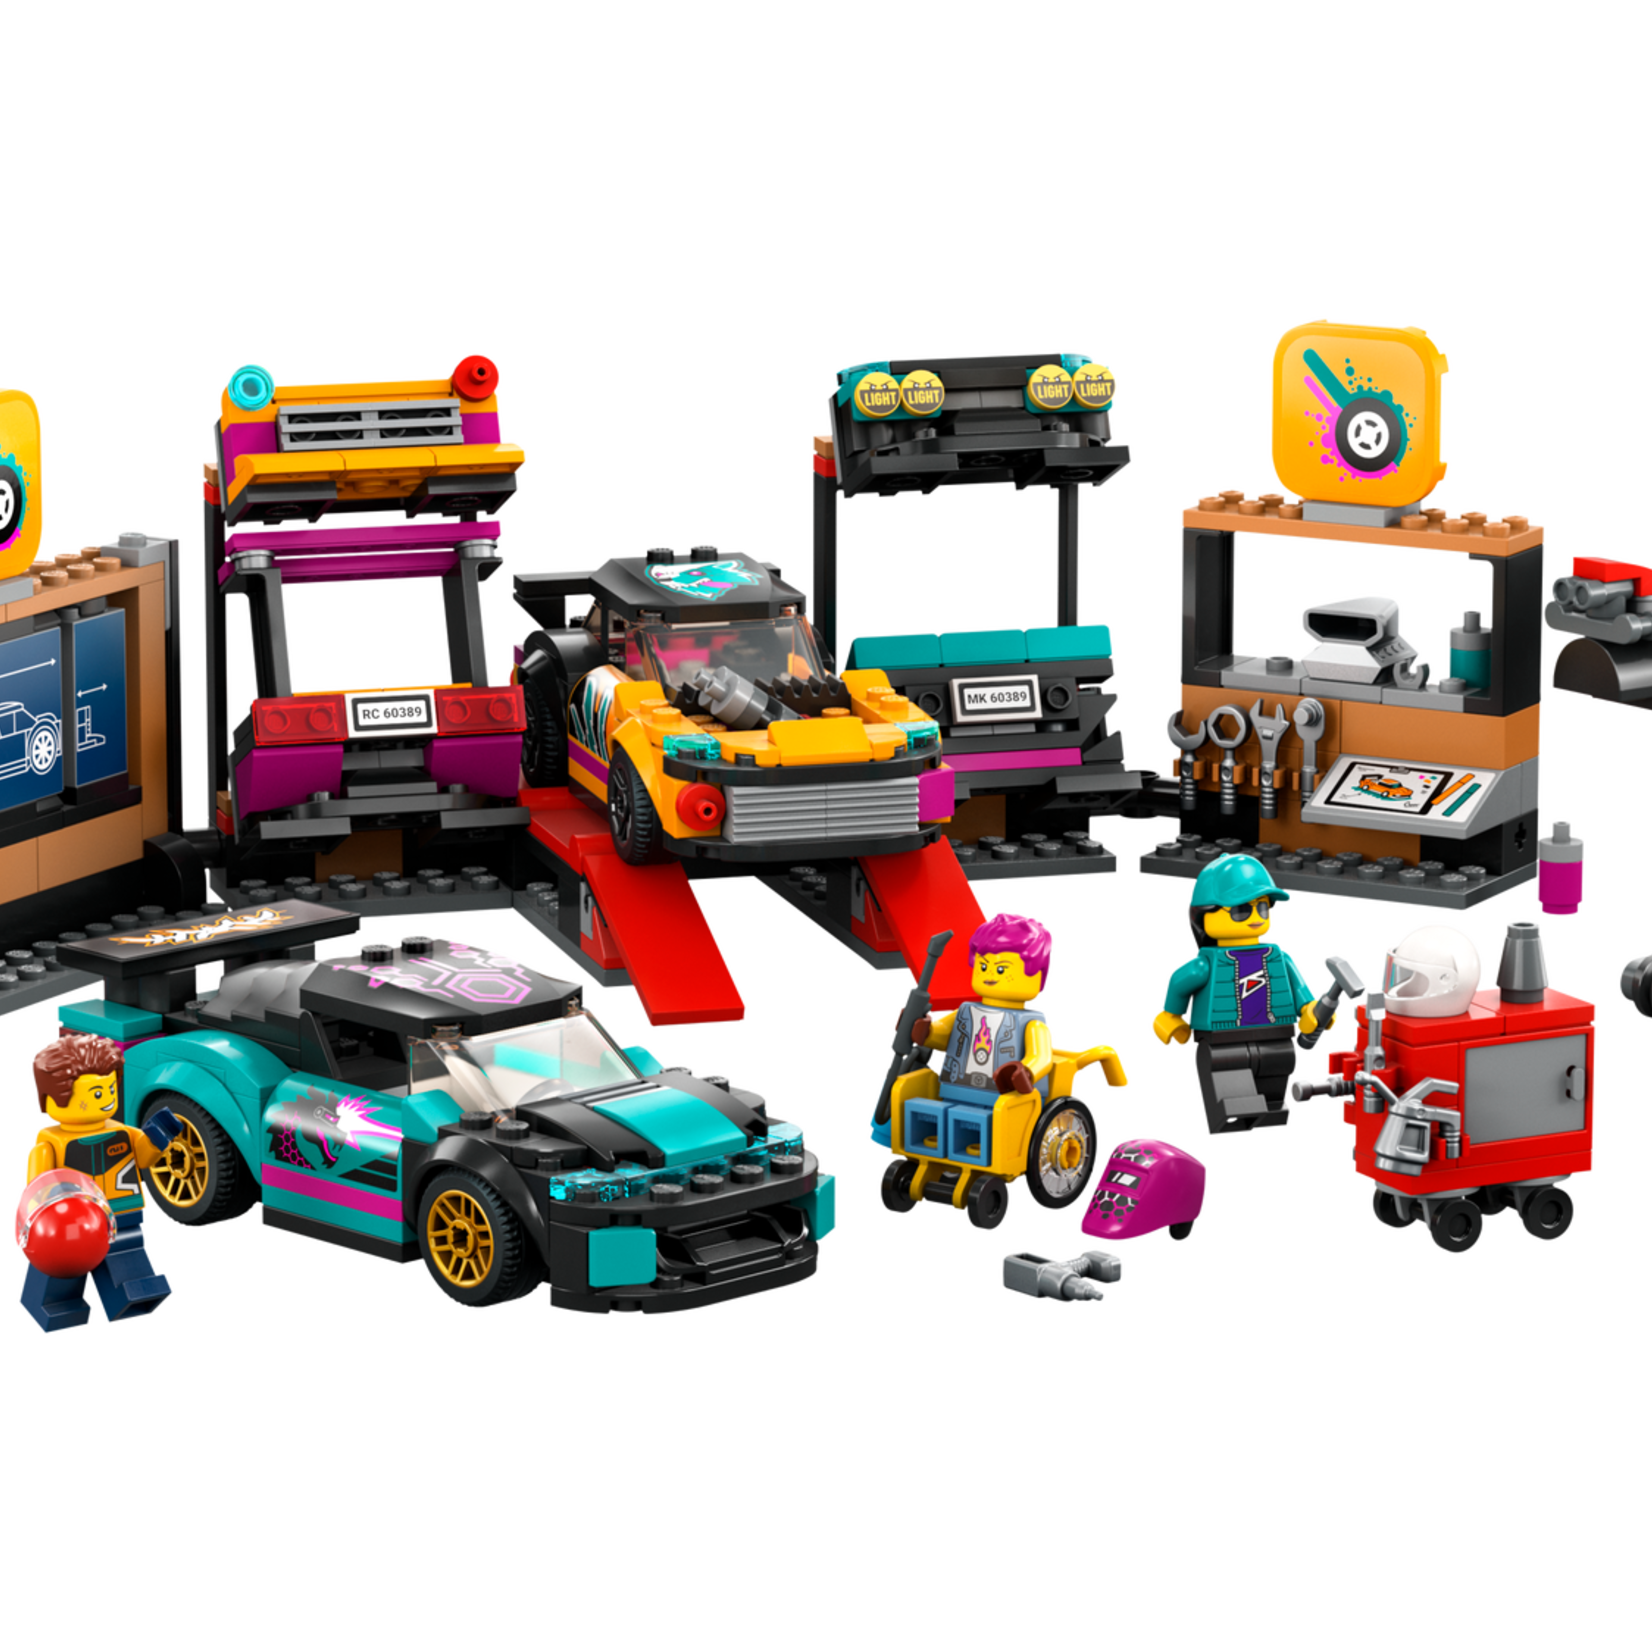 Lego Lego 60389 City - Le garage pour voitures sur mesure